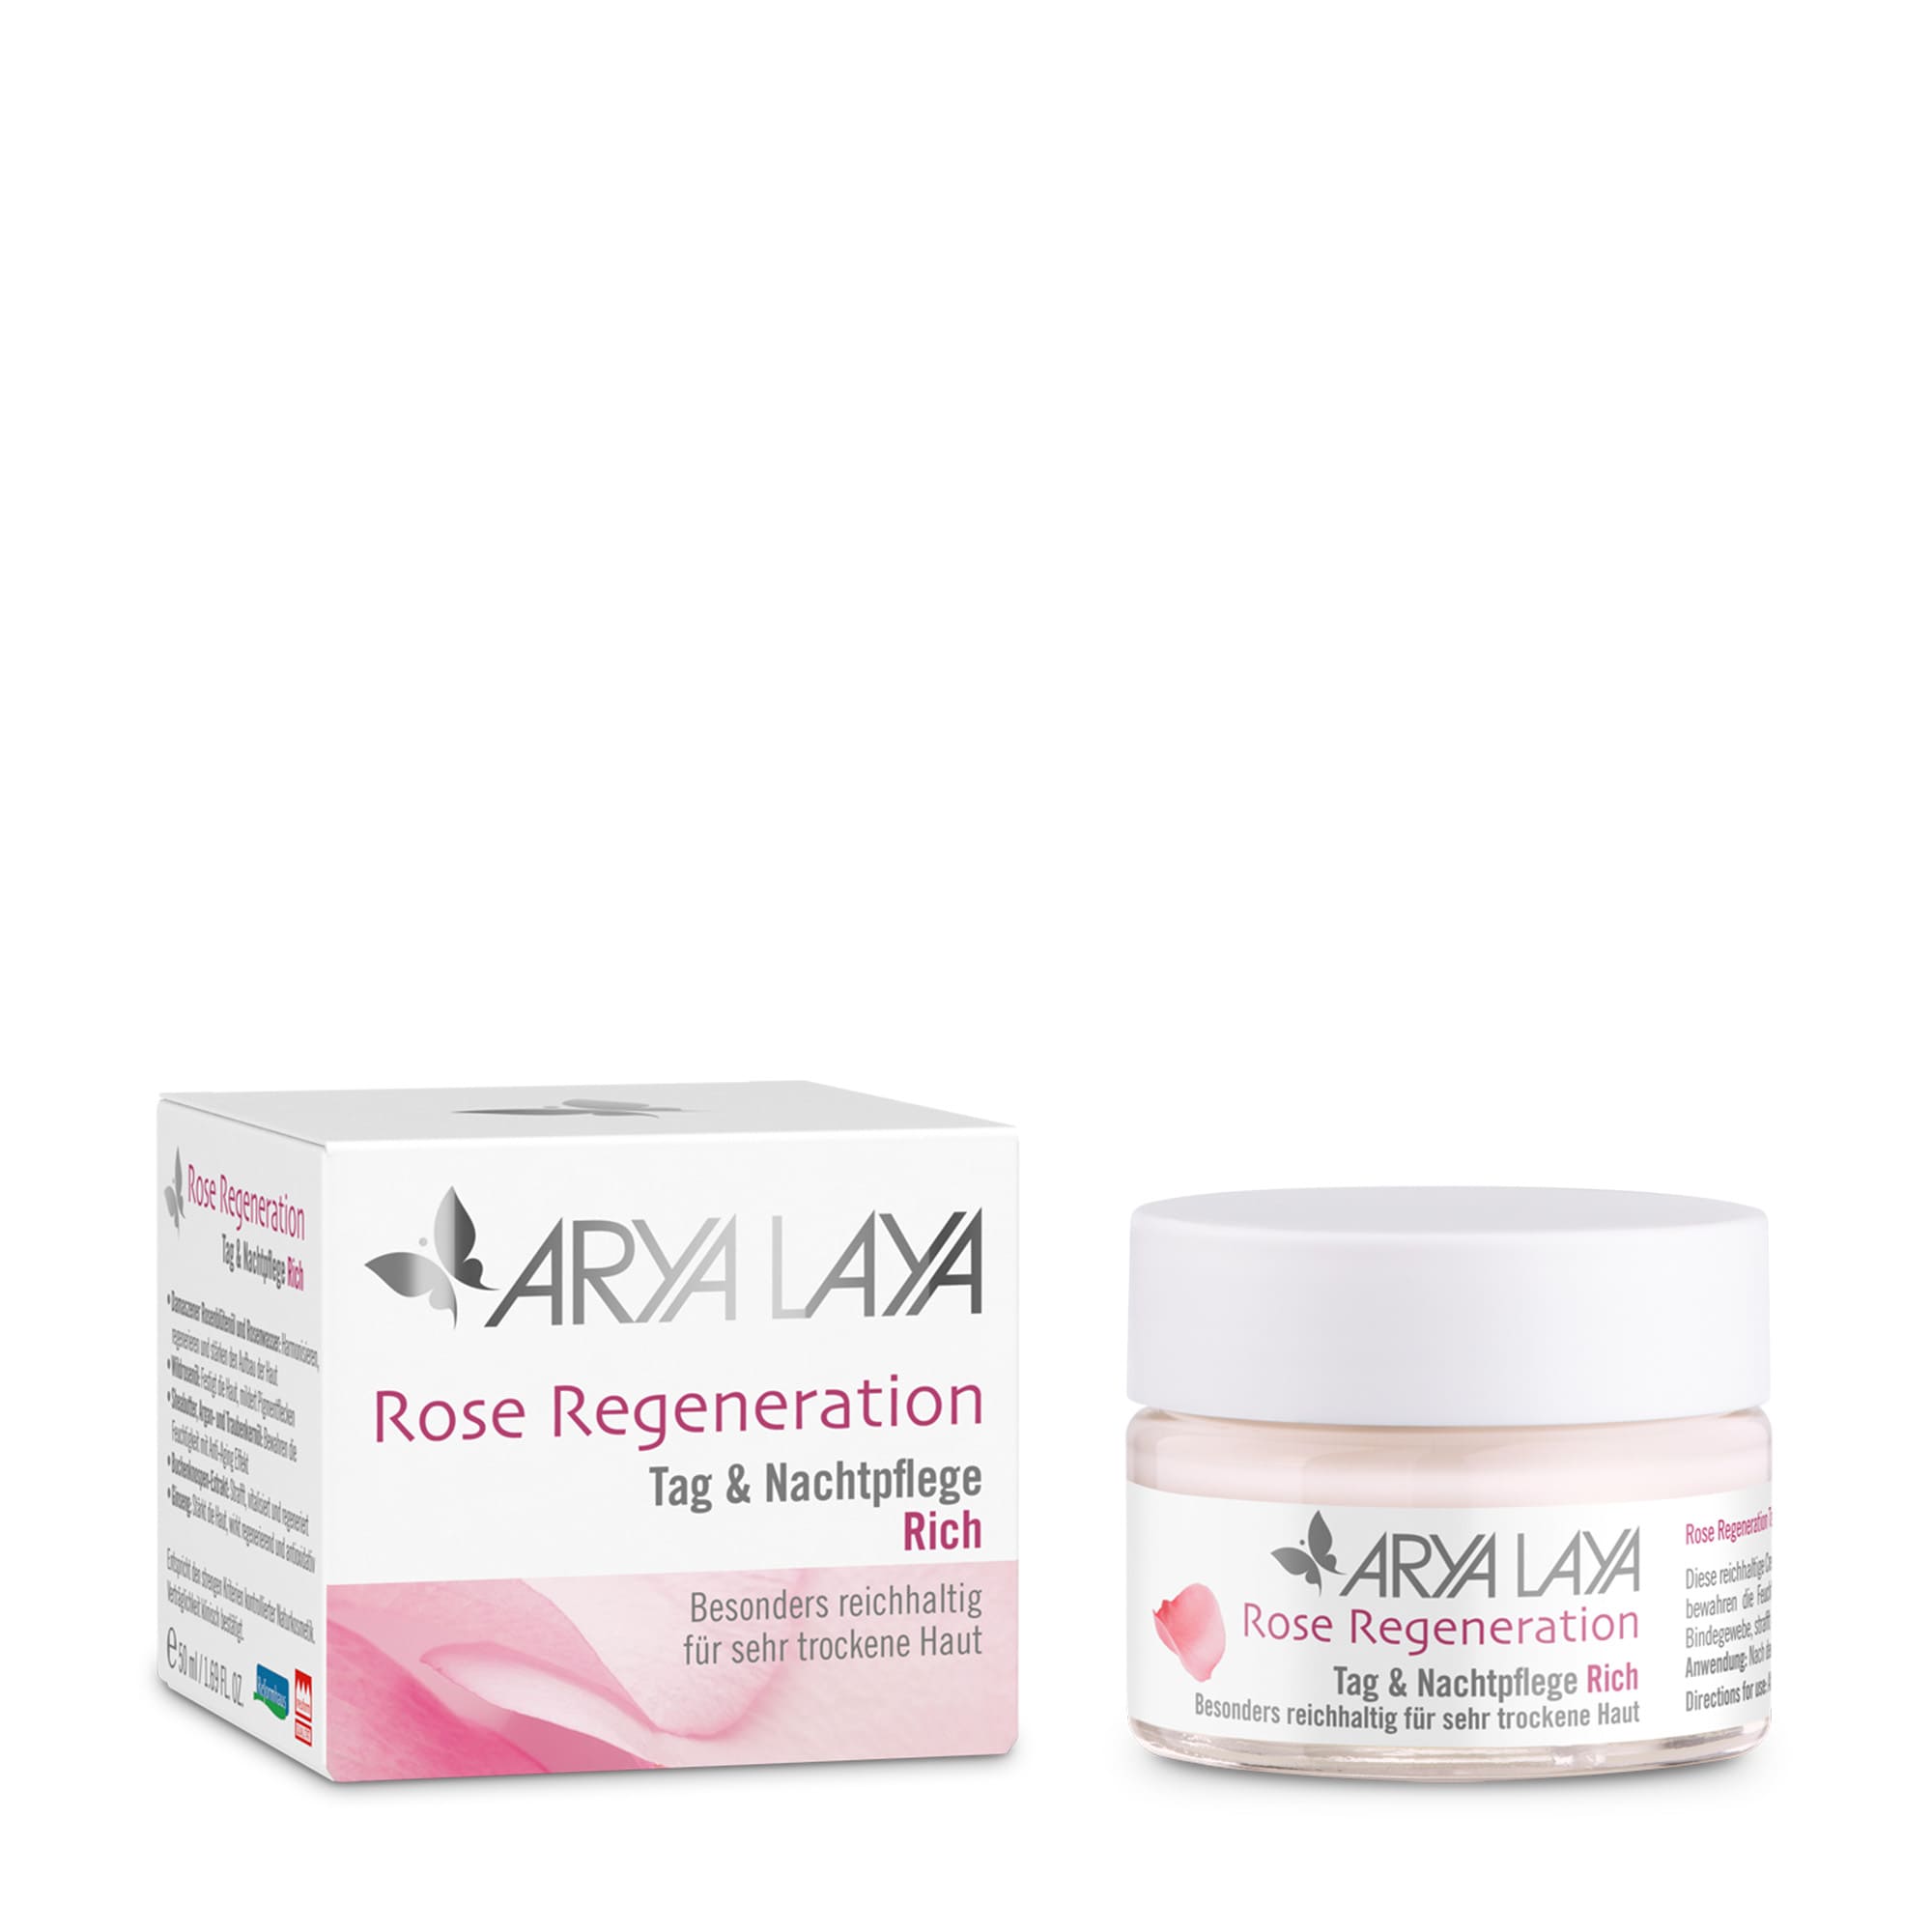 ARYA LAYA Rose Regeneration Tag & Nachtpflege Rich 50 ml, Glastiegel und Faltschachtel